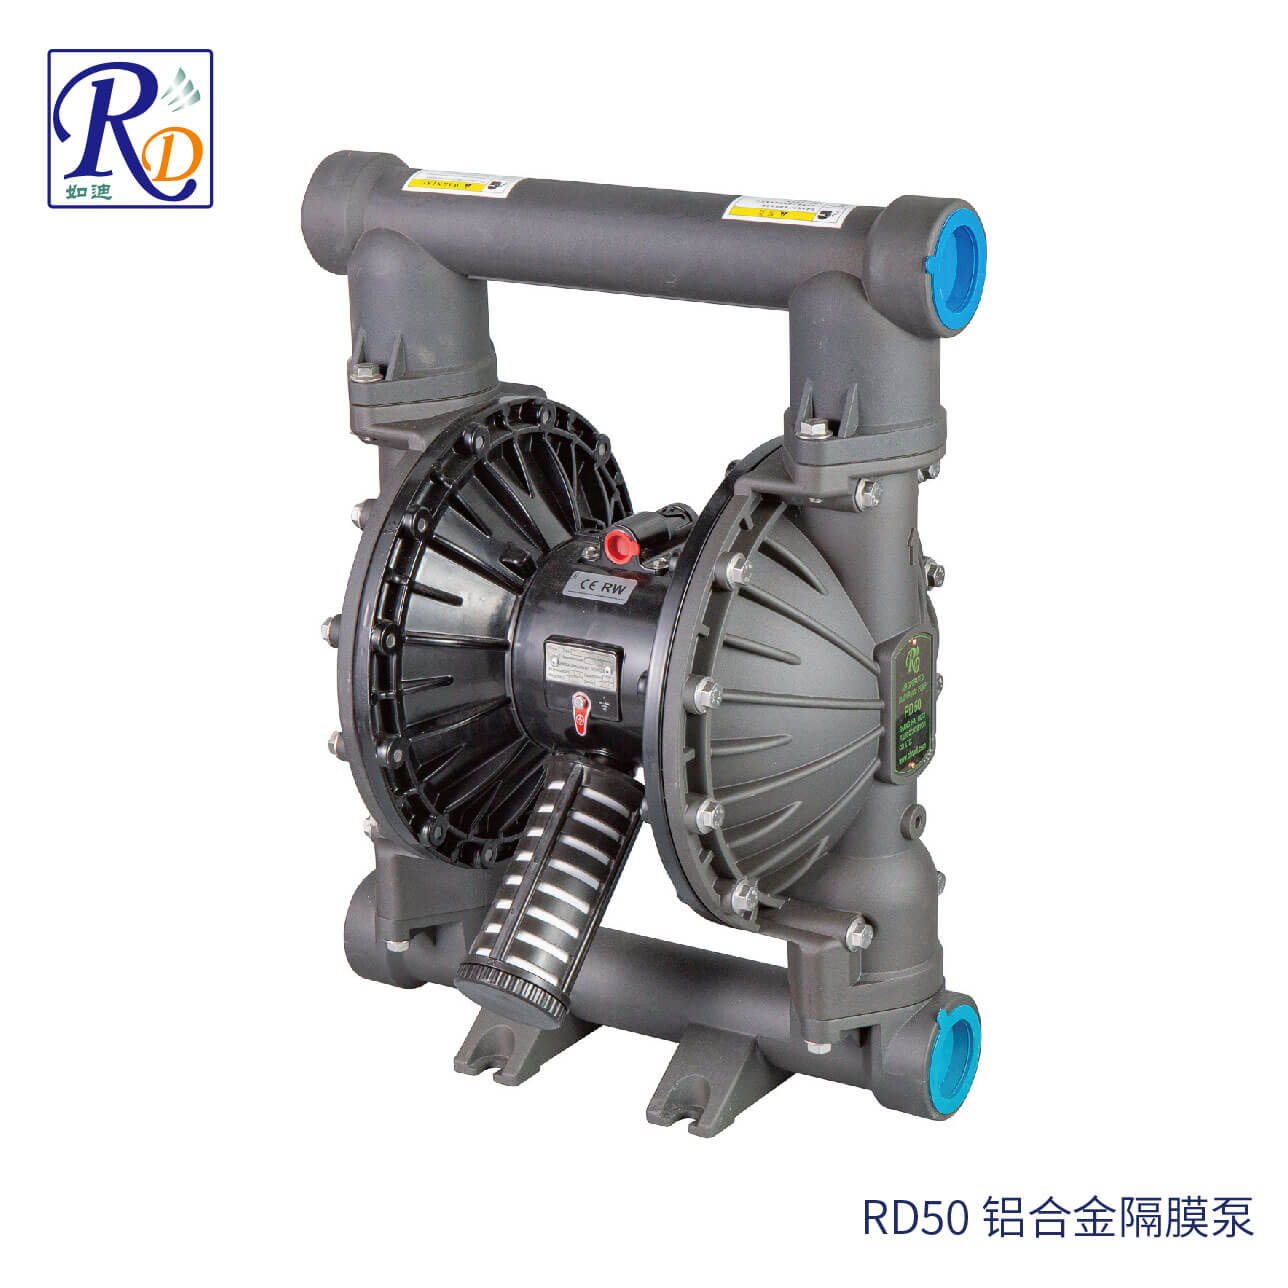 RD50 铝合金隔膜泵